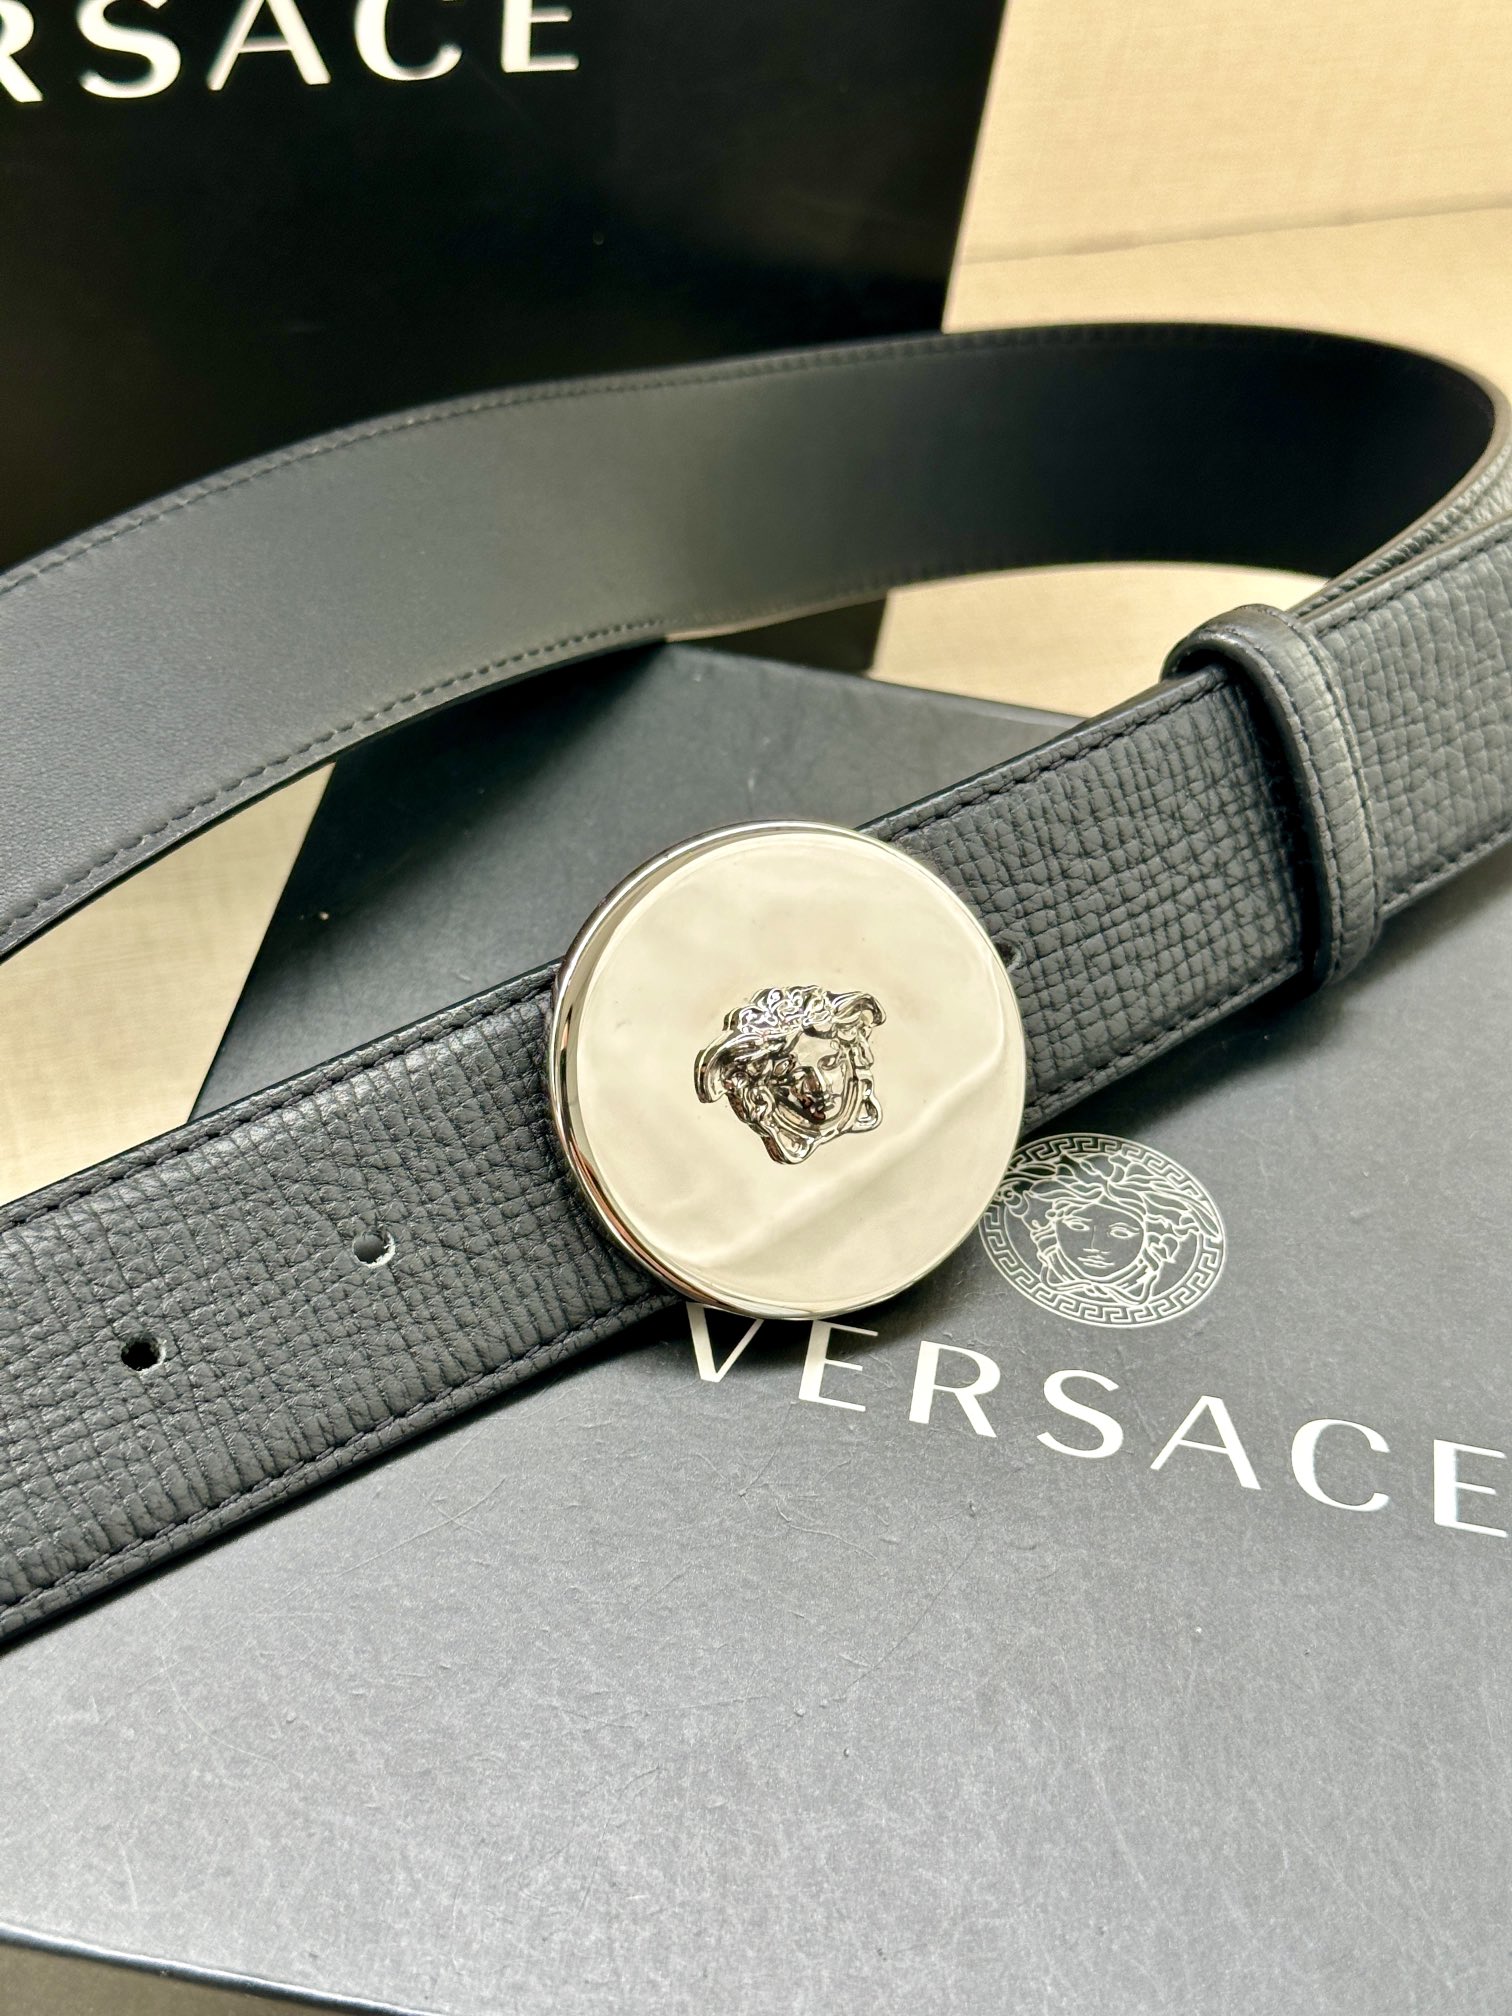 宽度4.0cm范思哲此款平纹皮底腰带饰有标志性的Versace美杜莎头像扣彰显品牌格调是一款精美的衣橱必